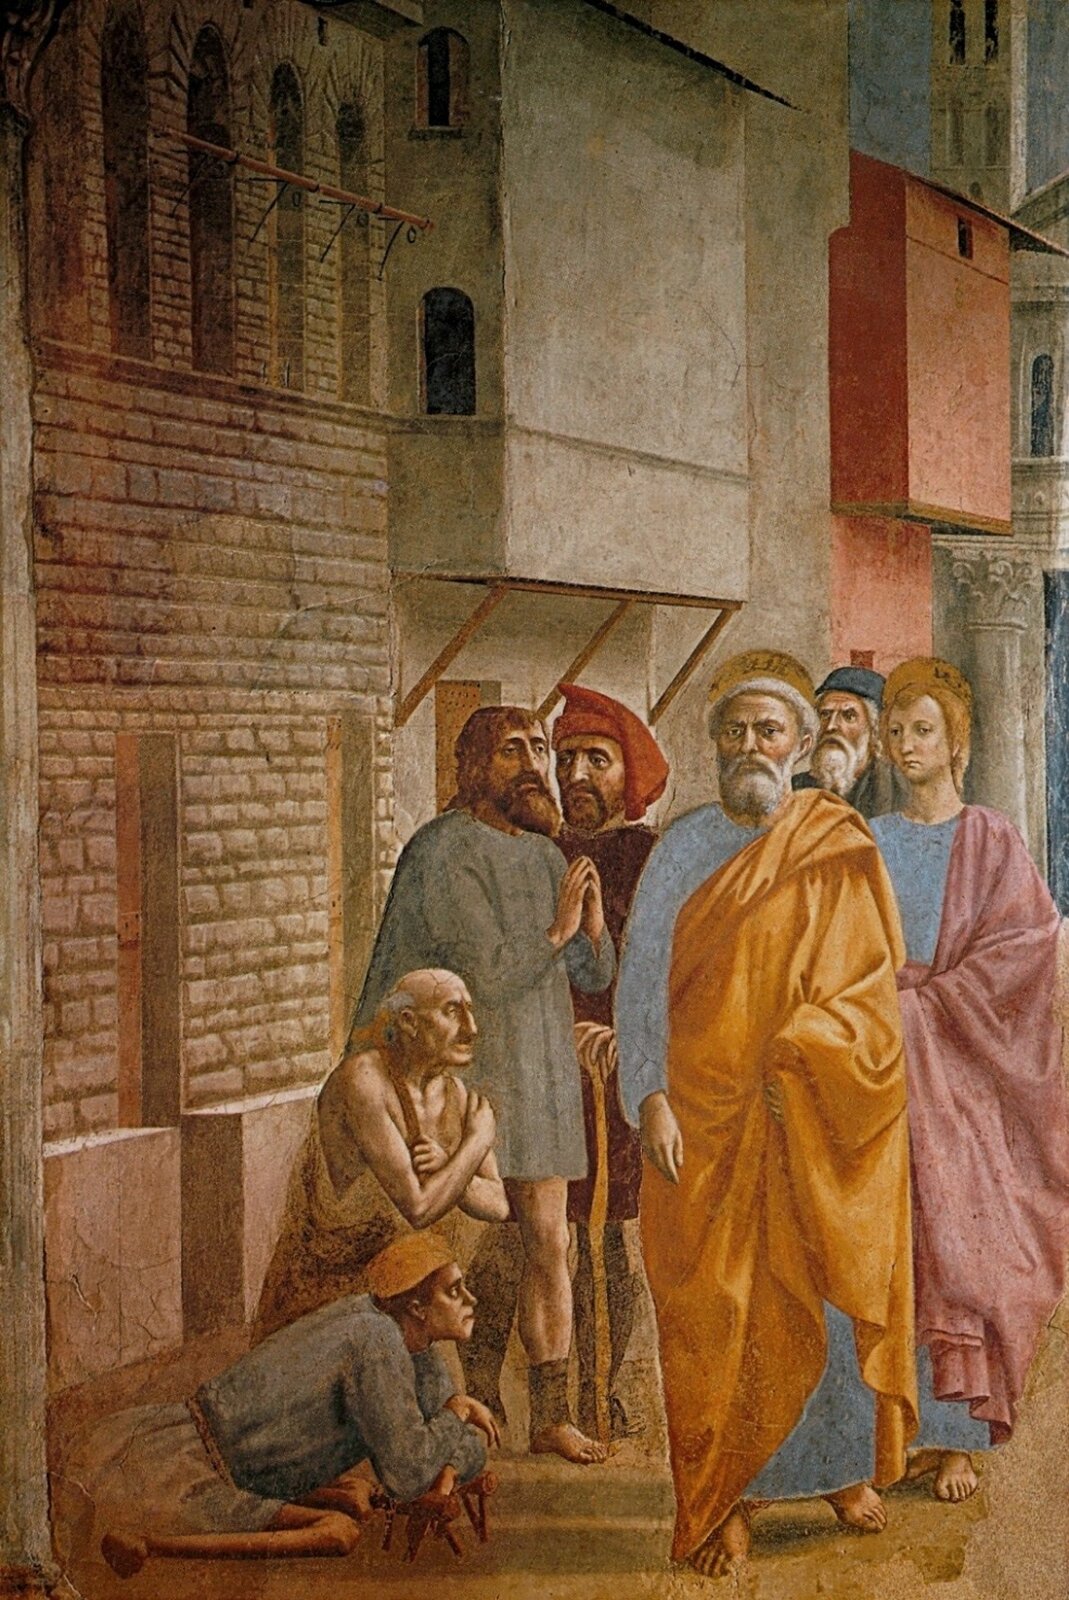 Ilustracja przedstawia obraz Masaccia „Uzdrawianie cieniem”. Na obrazie znajduje się święty Piotr uzdrawiający chorych swoim cieniem. Ubrany jest w błękitno-pomarańczowe szaty. Ma siwe włosy oraz brodę i wąsy. Dookoła mężczyzny znajdują się chorzy proszący o uzdrowienie. Za postaciami znajdują się mury budynków.